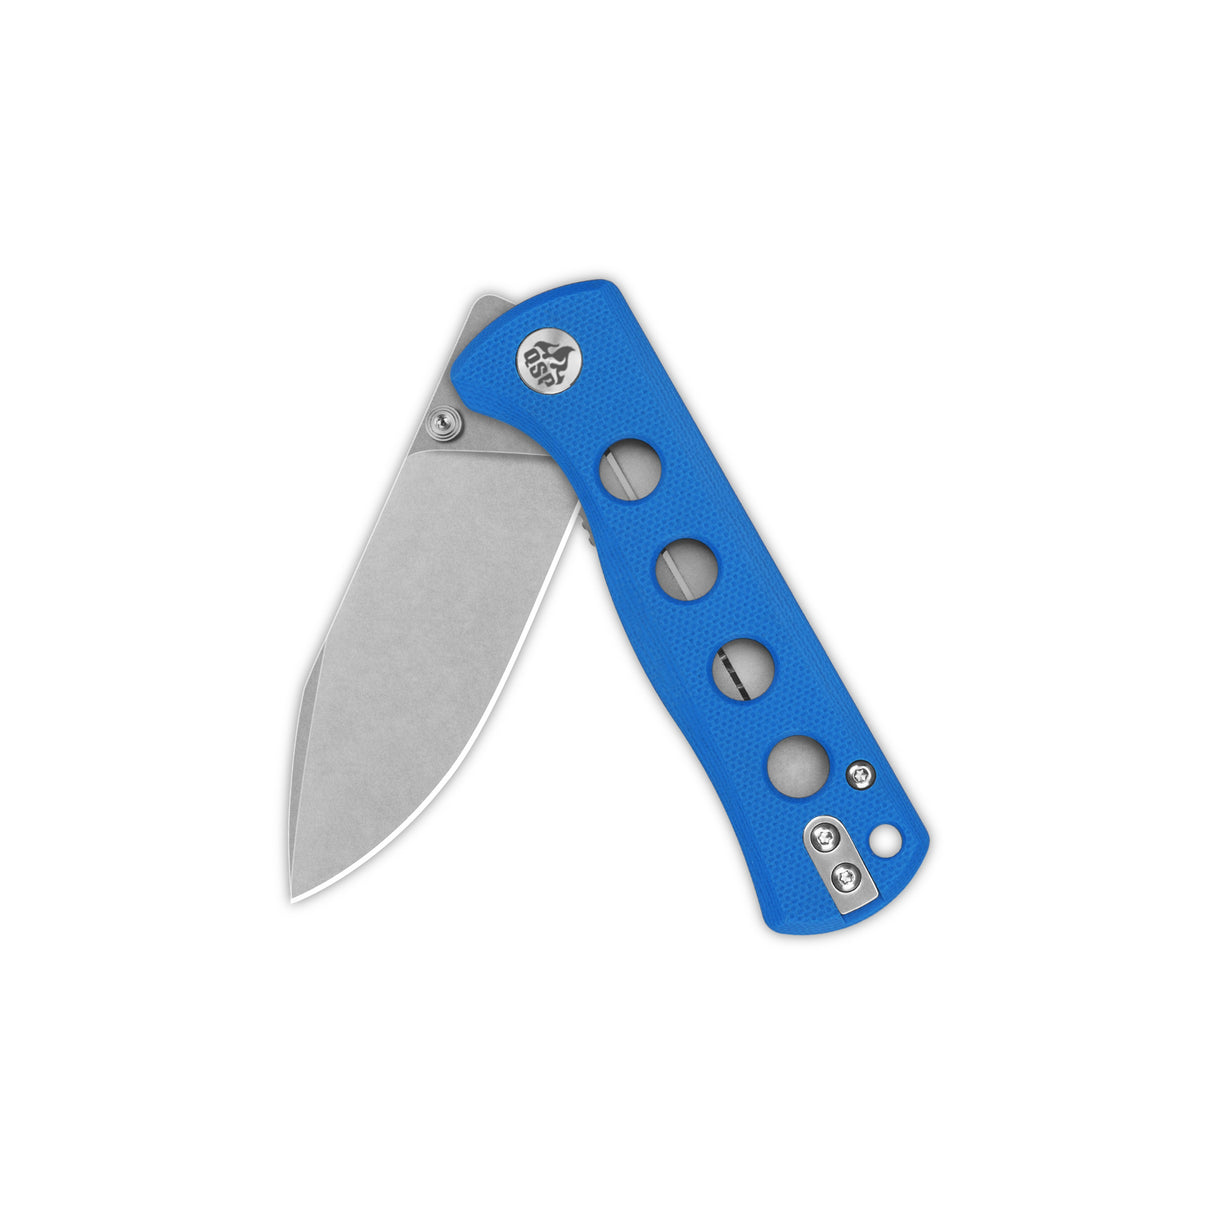 QSP Canary Folder Liner Lock Pocket Knife 14C28N Blade Blue G10 Handle